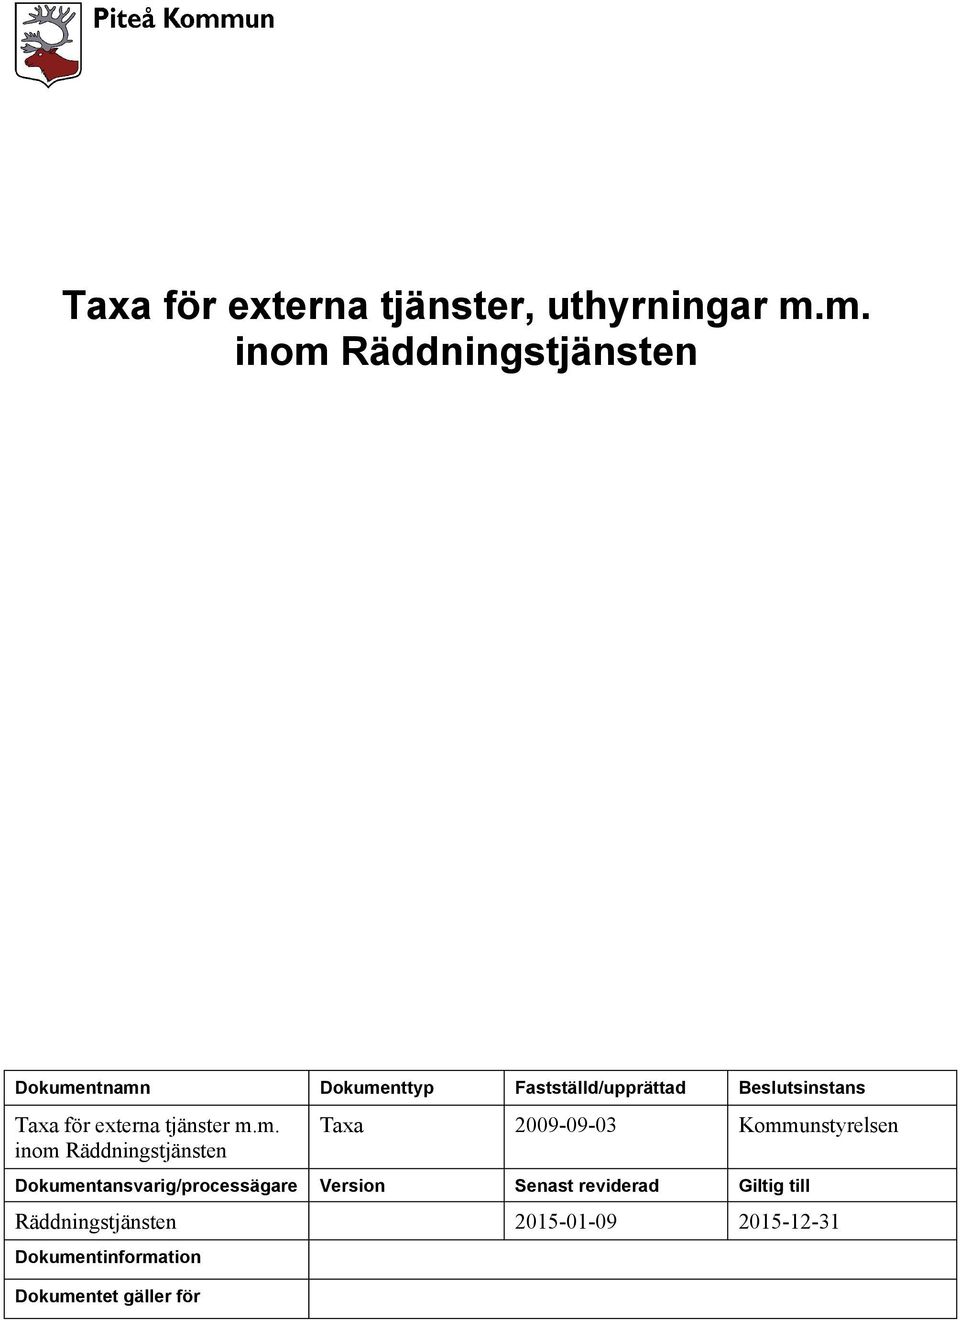 Taxa för externa tjänster m.